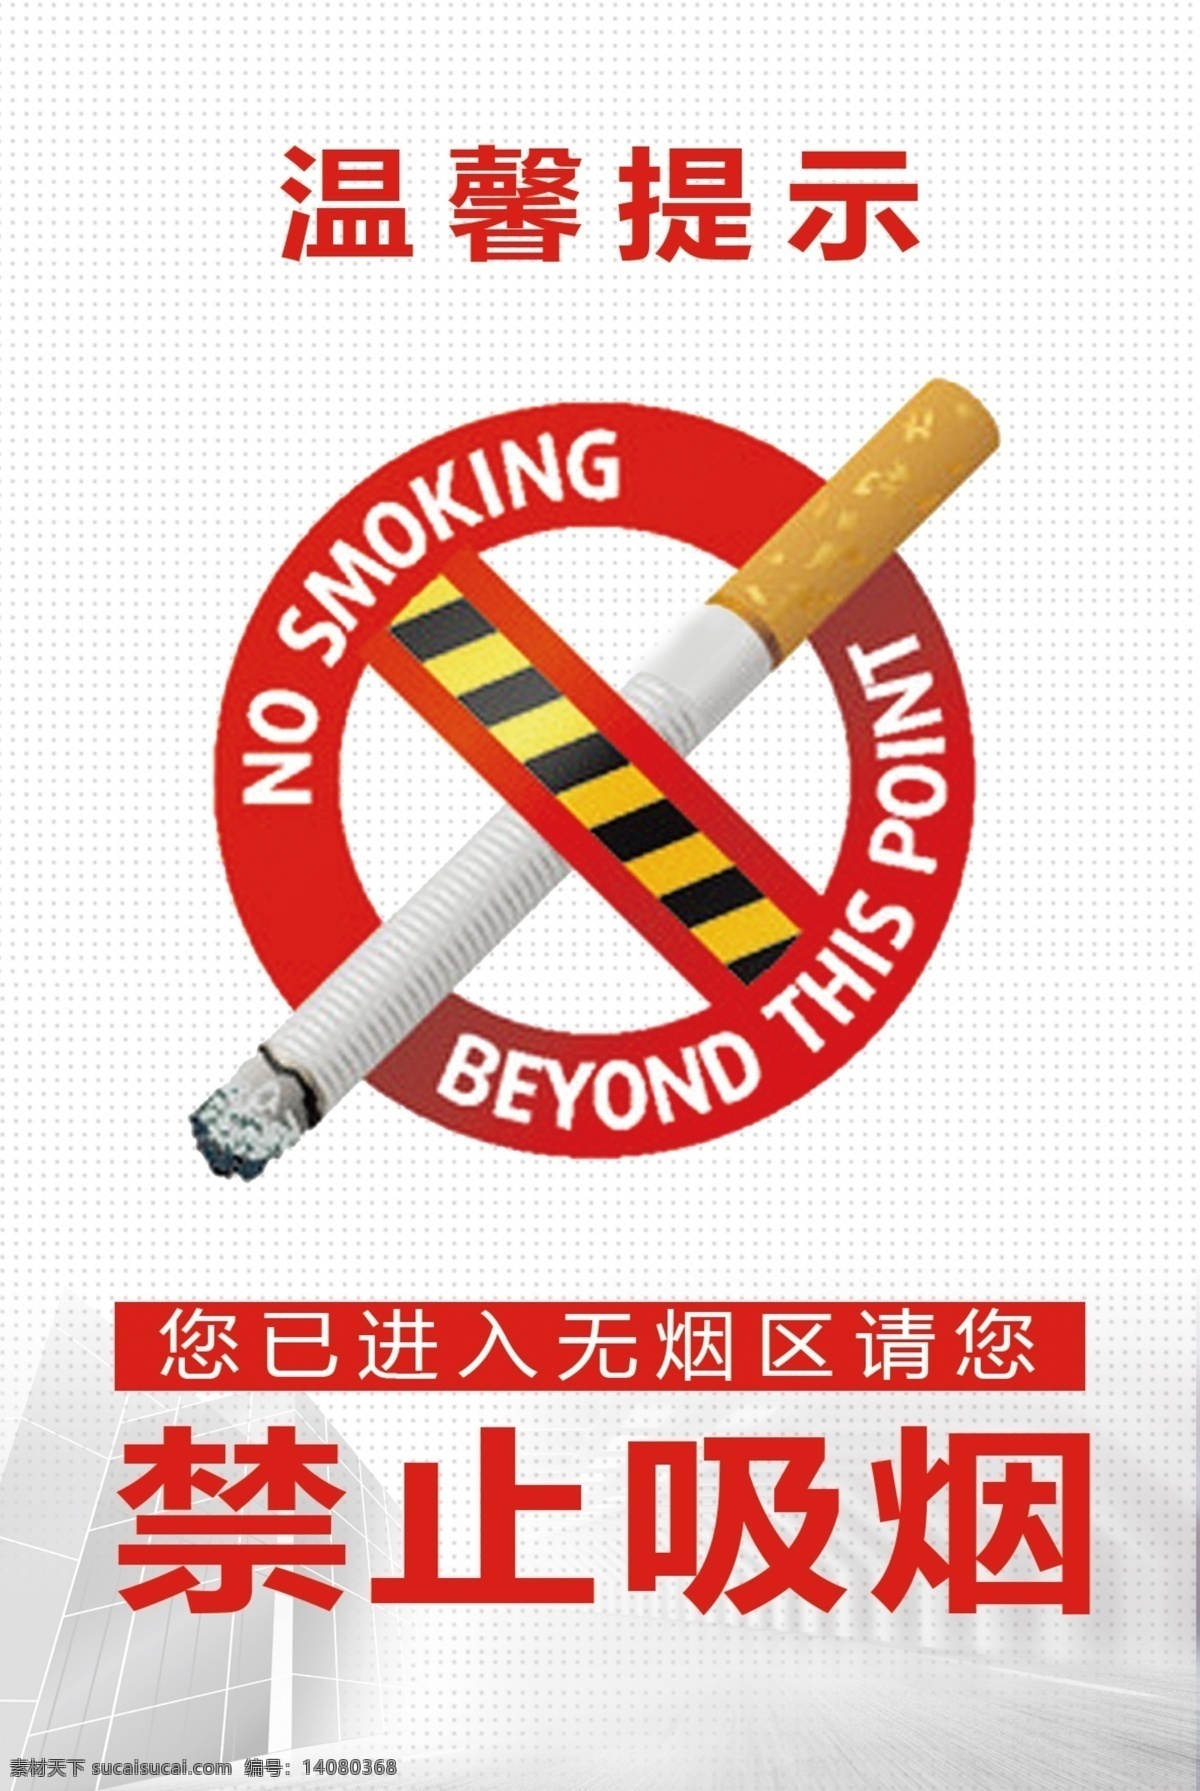 禁止吸烟立牌 温馨提示 禁止吸烟 禁止 吸烟 无烟 无烟区 不要吸烟 禁烟 名片卡片